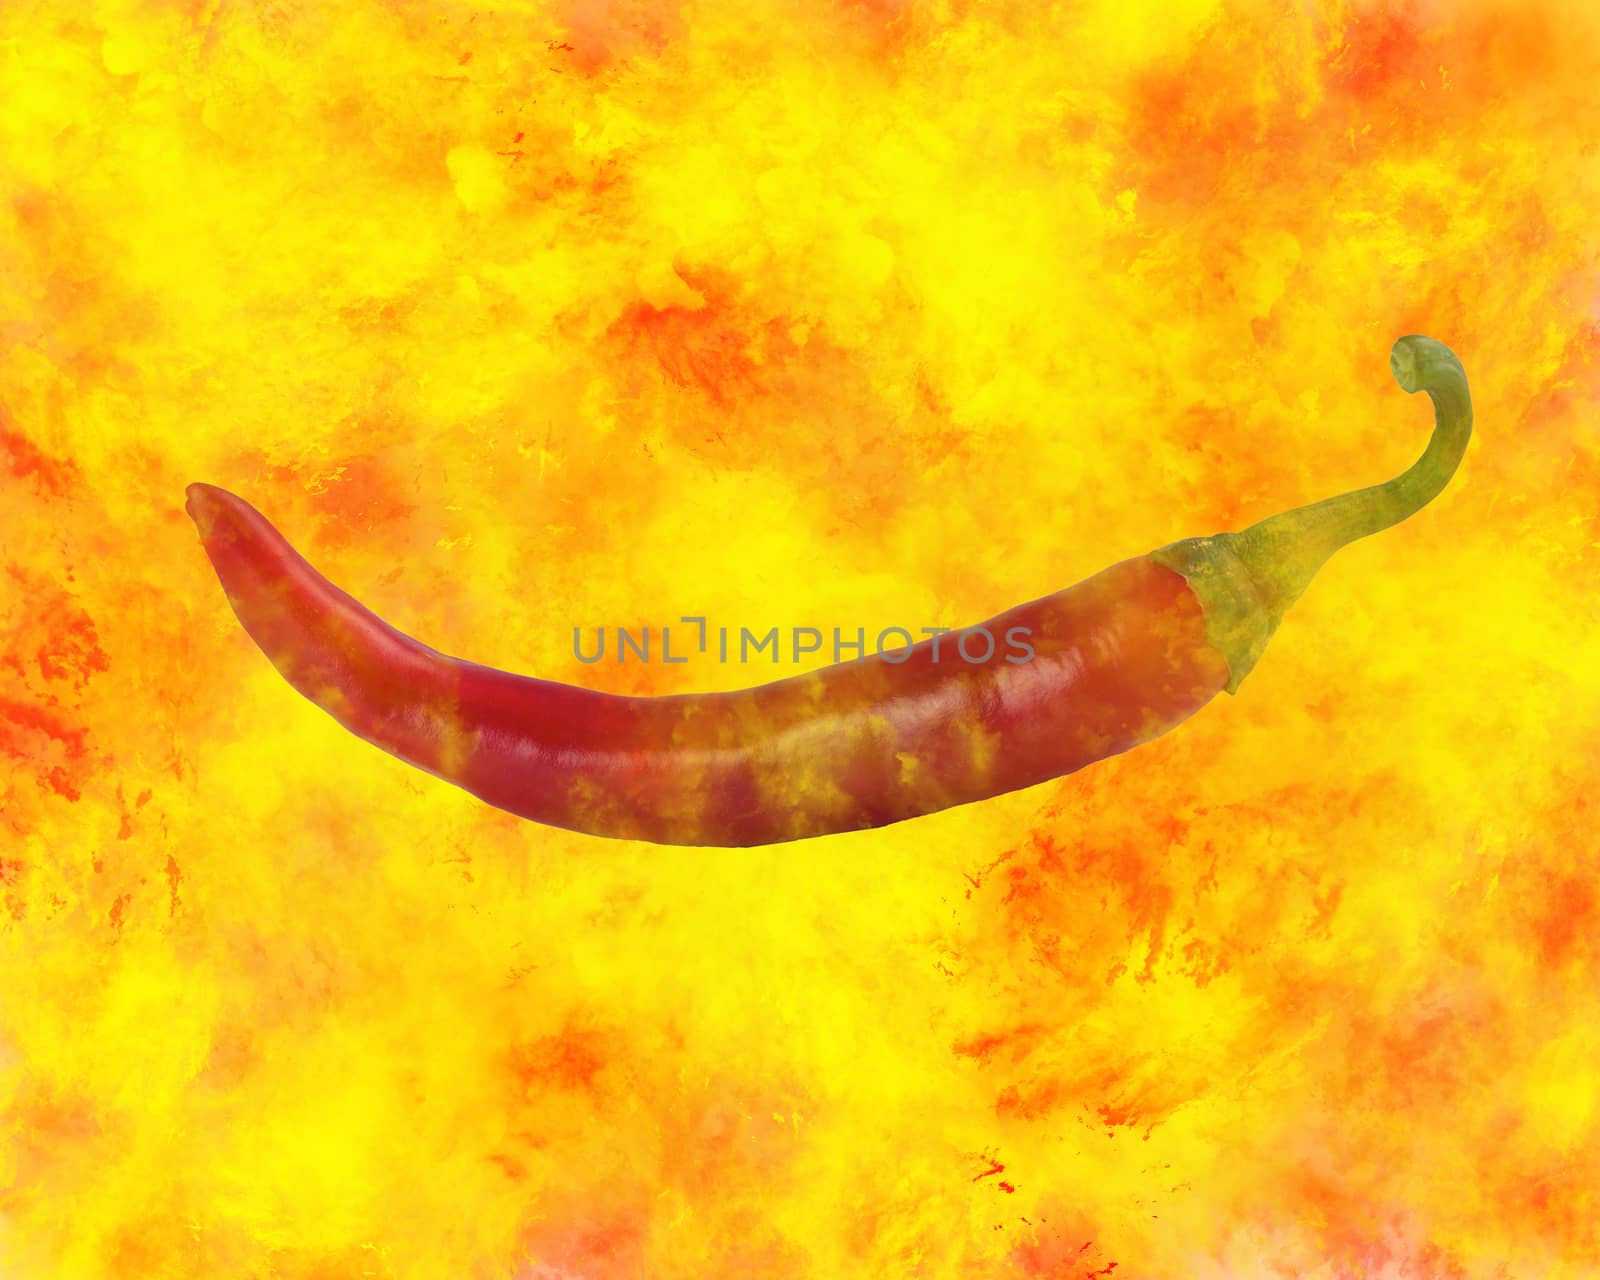 burning red pepper